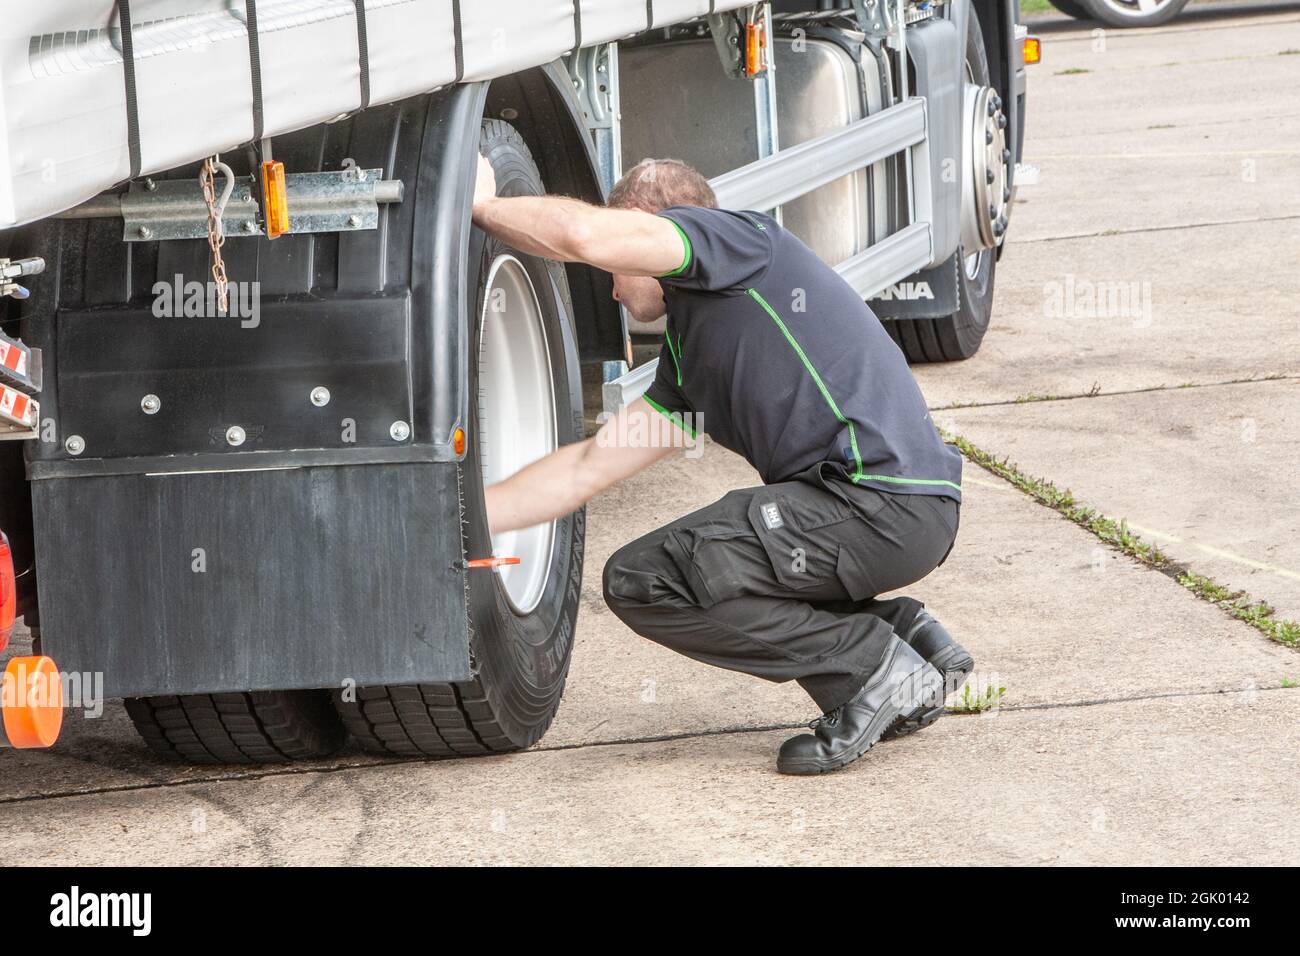 Co-Op-Fahrer des Jahres, gesponsert von Scania (GB) Stockfoto